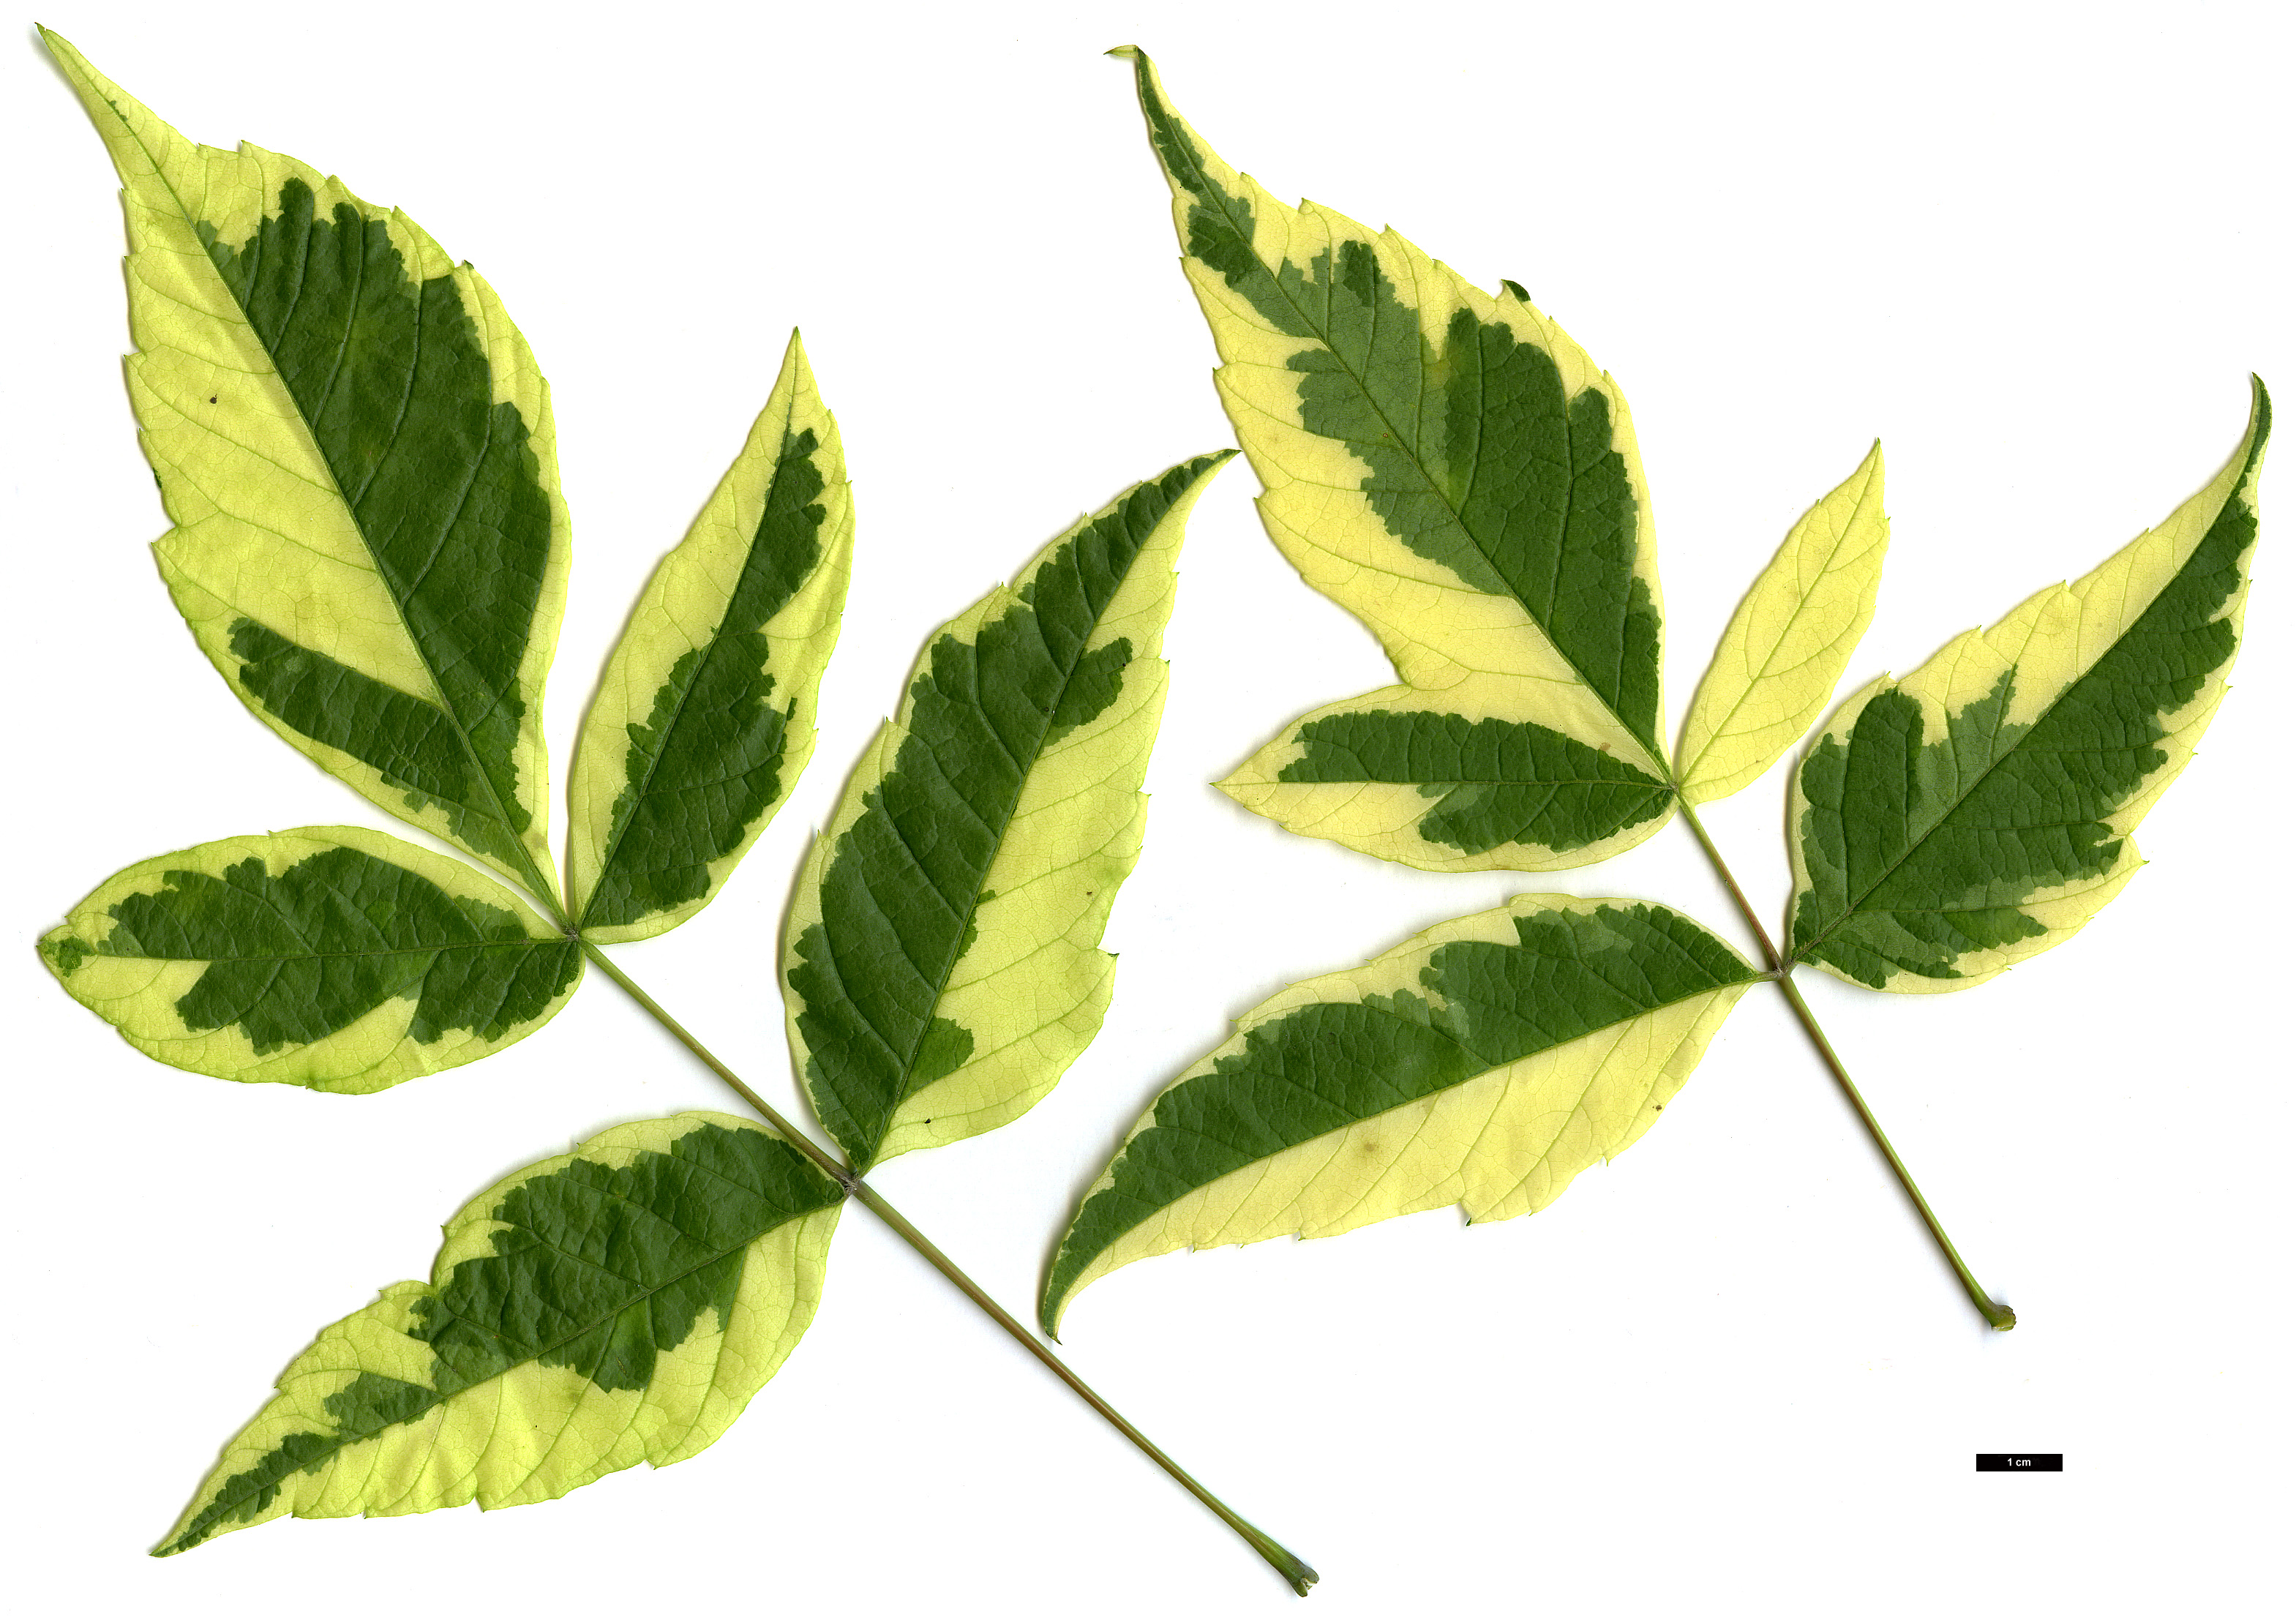 High resolution image: Family: Sapindaceae - Genus: Acer - Taxon: negundo - SpeciesSub: 'Aureomarginatum'